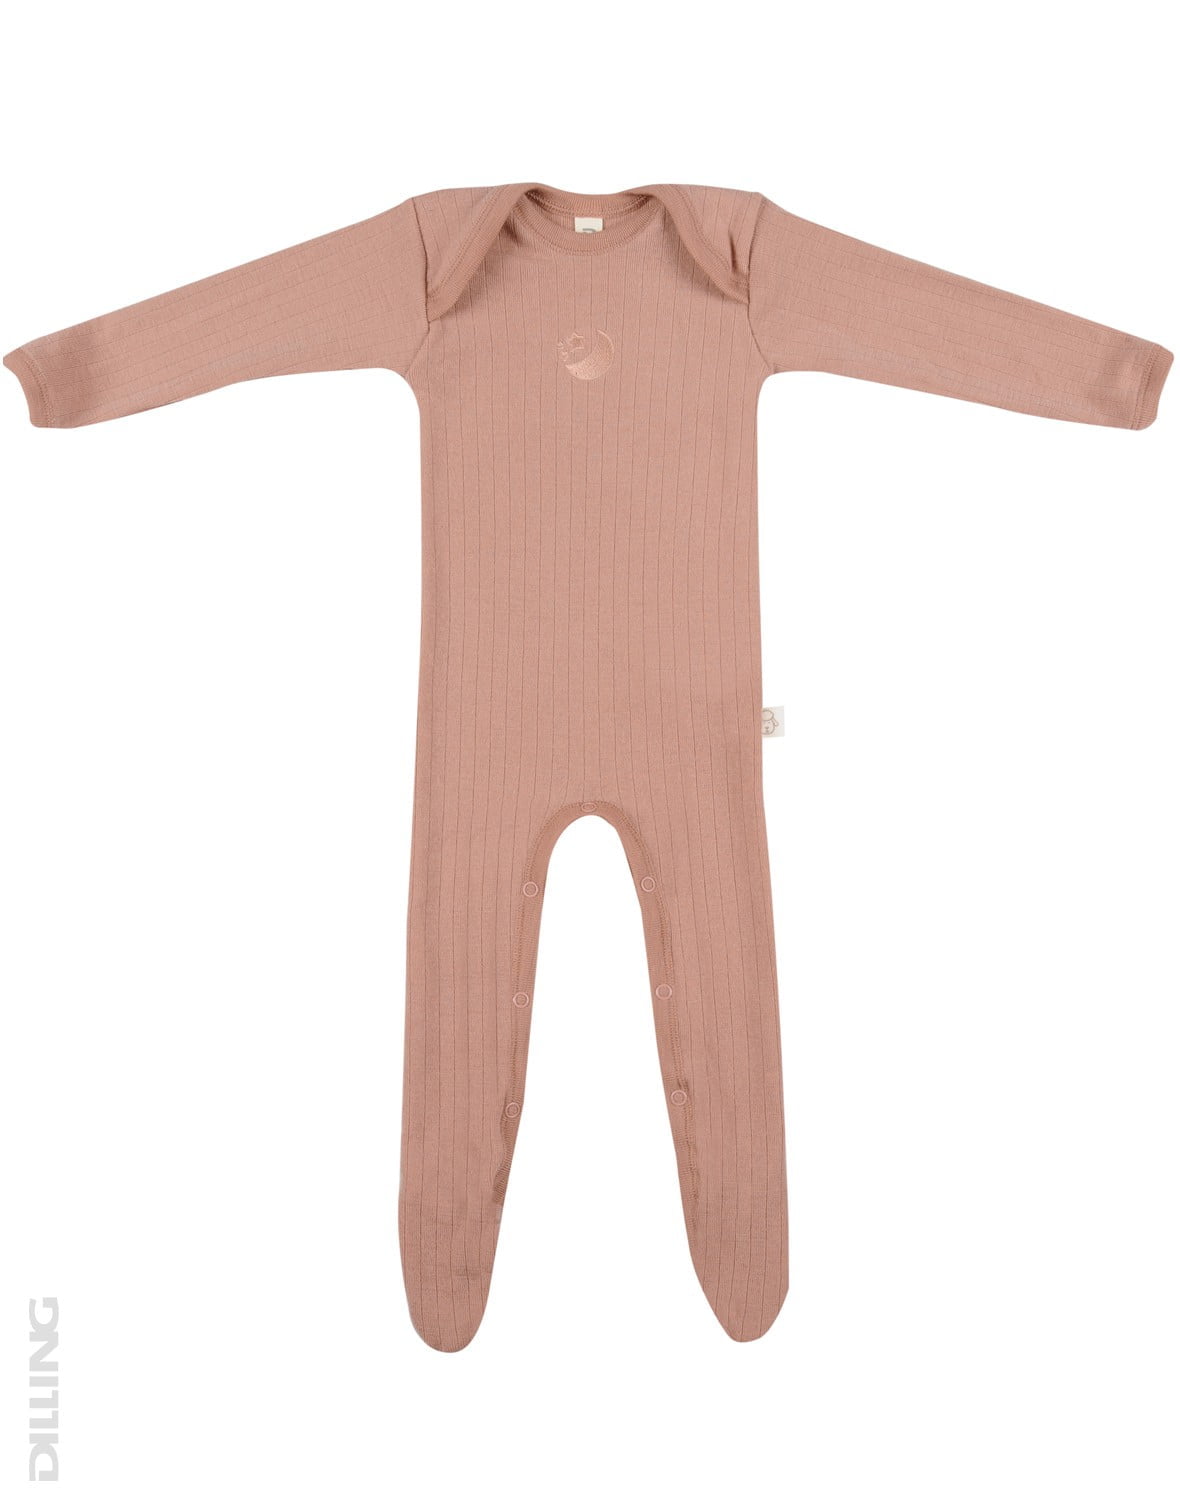 Salopetă – pijama overall roz pudrat din lână merinos organică rib pentru bebeluși Dilling